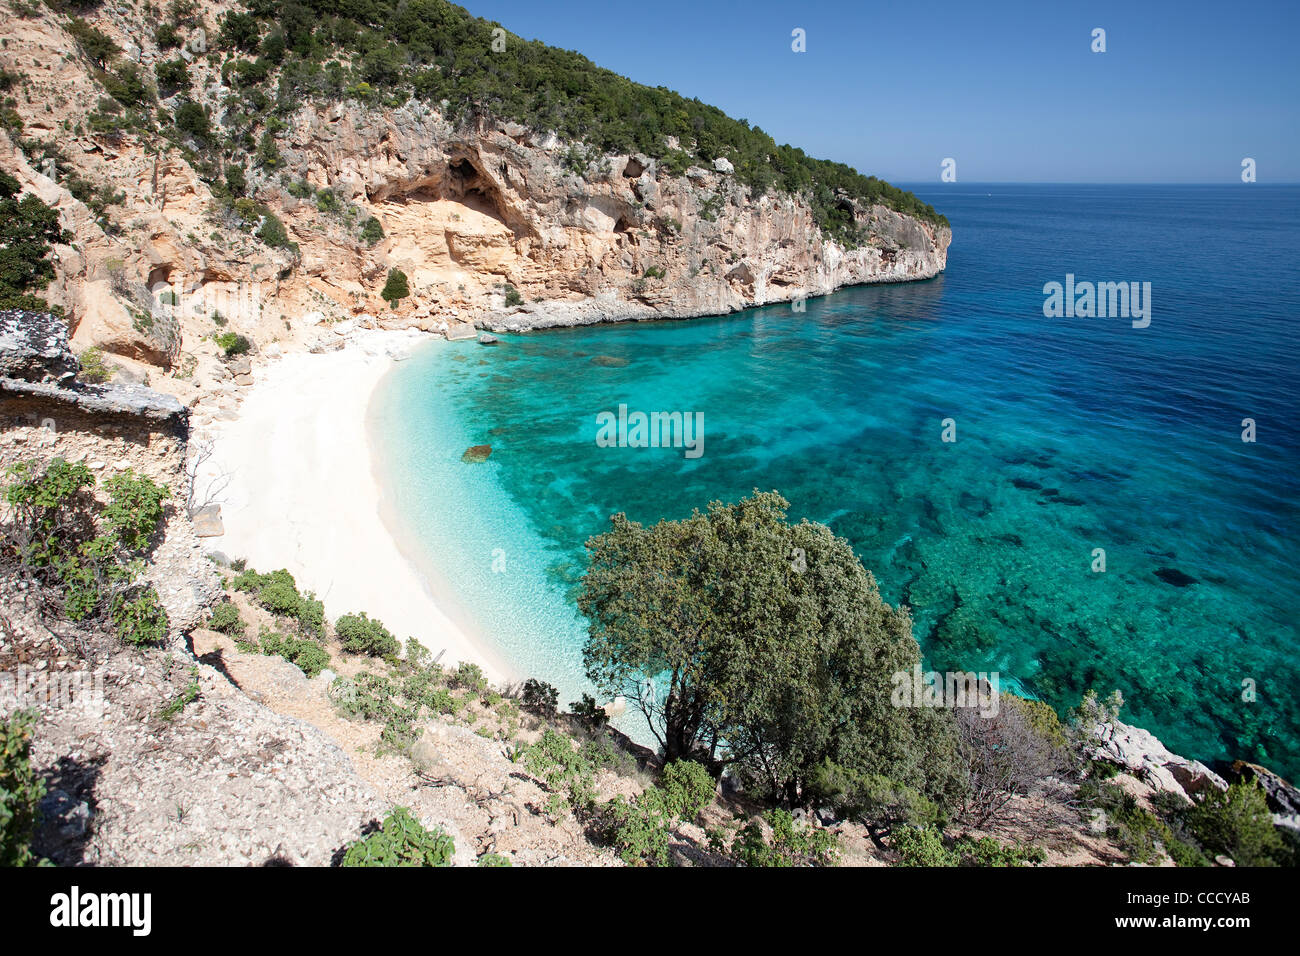 Cala Biriola. Golfo di Orosei, Baunei (OG), Sardinien, Italien, Europa Stockfoto